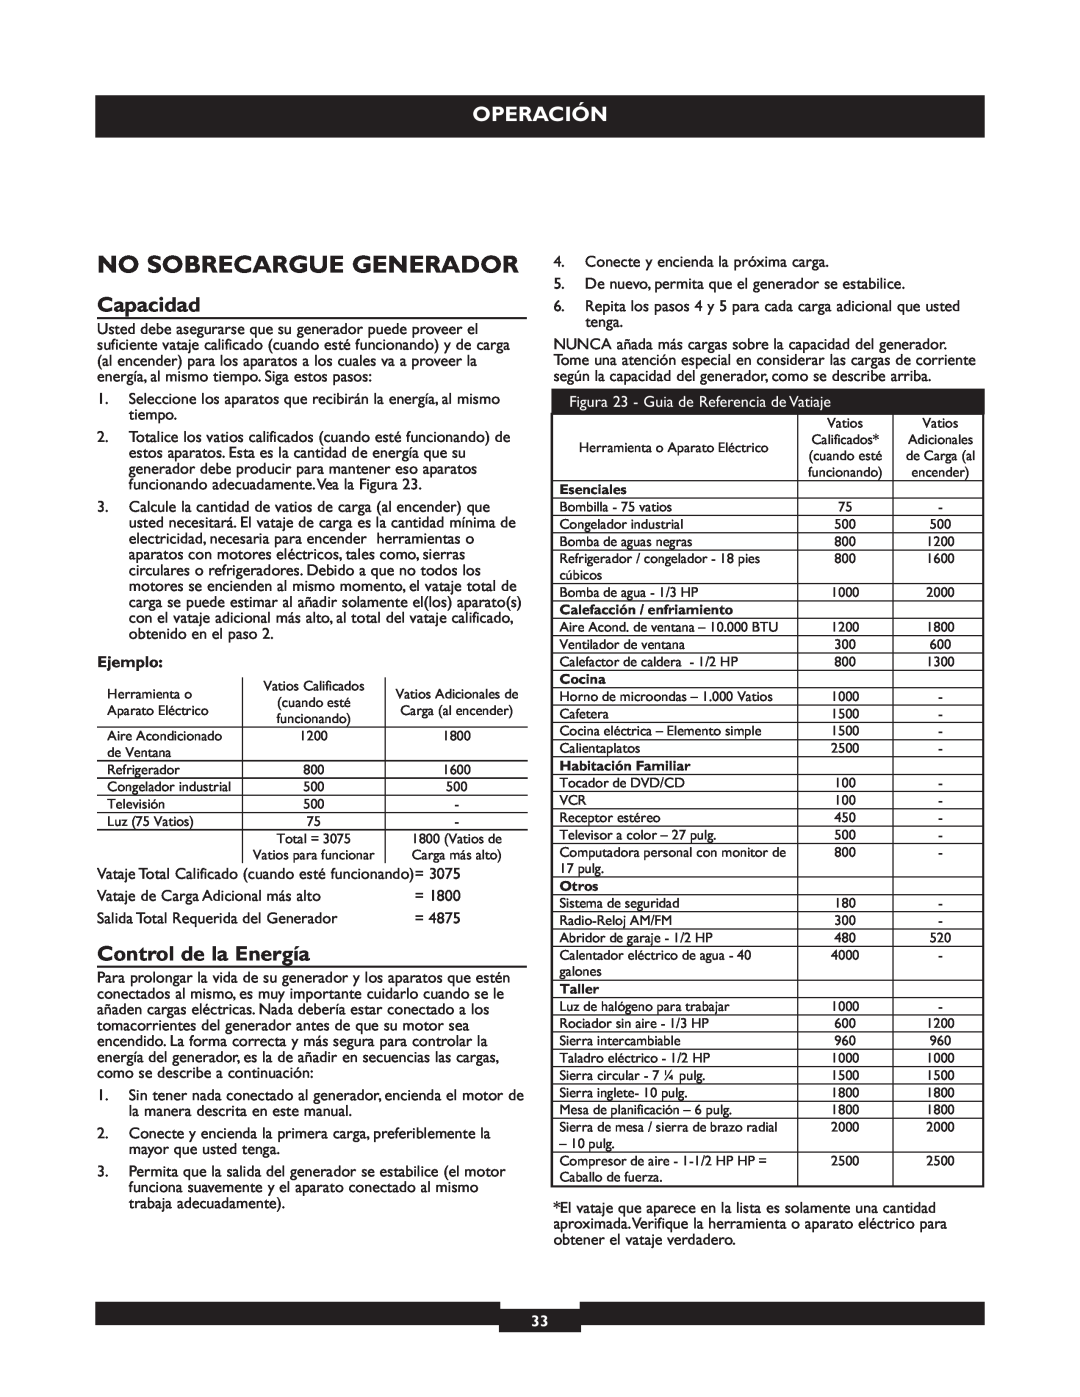 Briggs & Stratton 30219 manual No Sobrecargue Generador, Operación, Capacidad, Control de la Energía, Ejemplo 